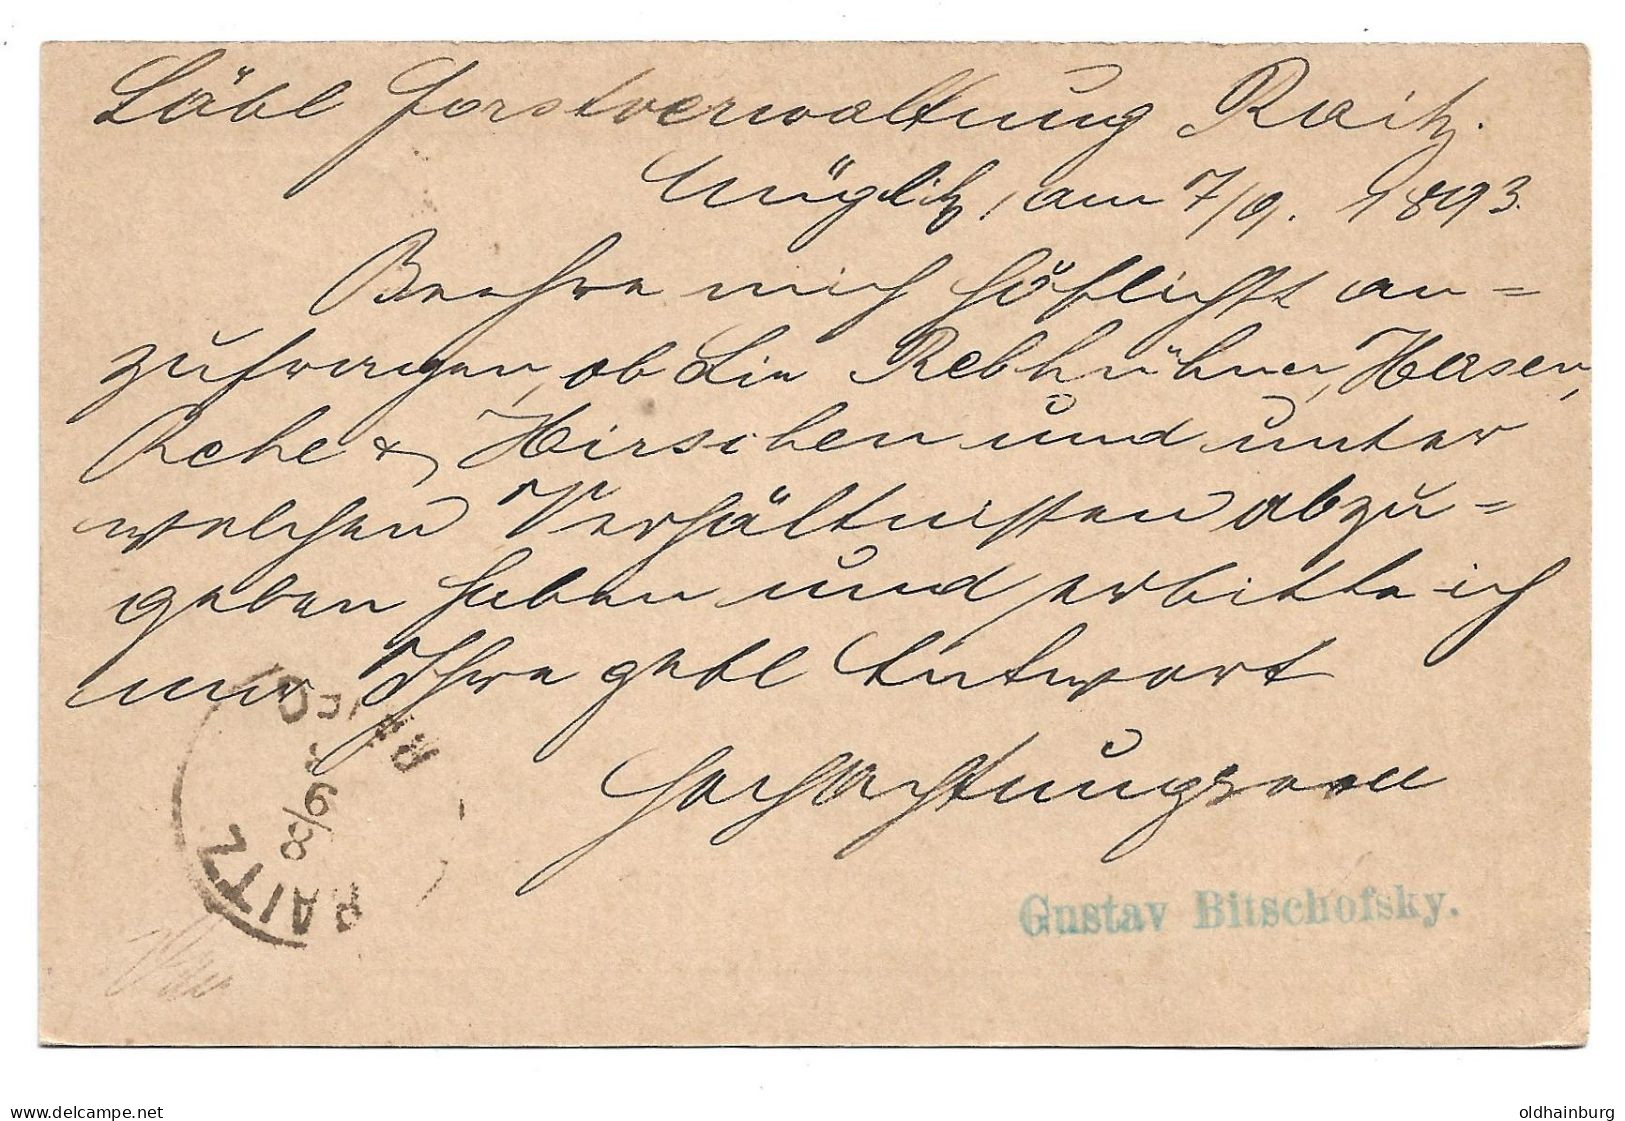 0152p: Altösterreichisches Gebiet Mähren, Müglitz, Postkarte 1893 - ...-1918 Préphilatélie